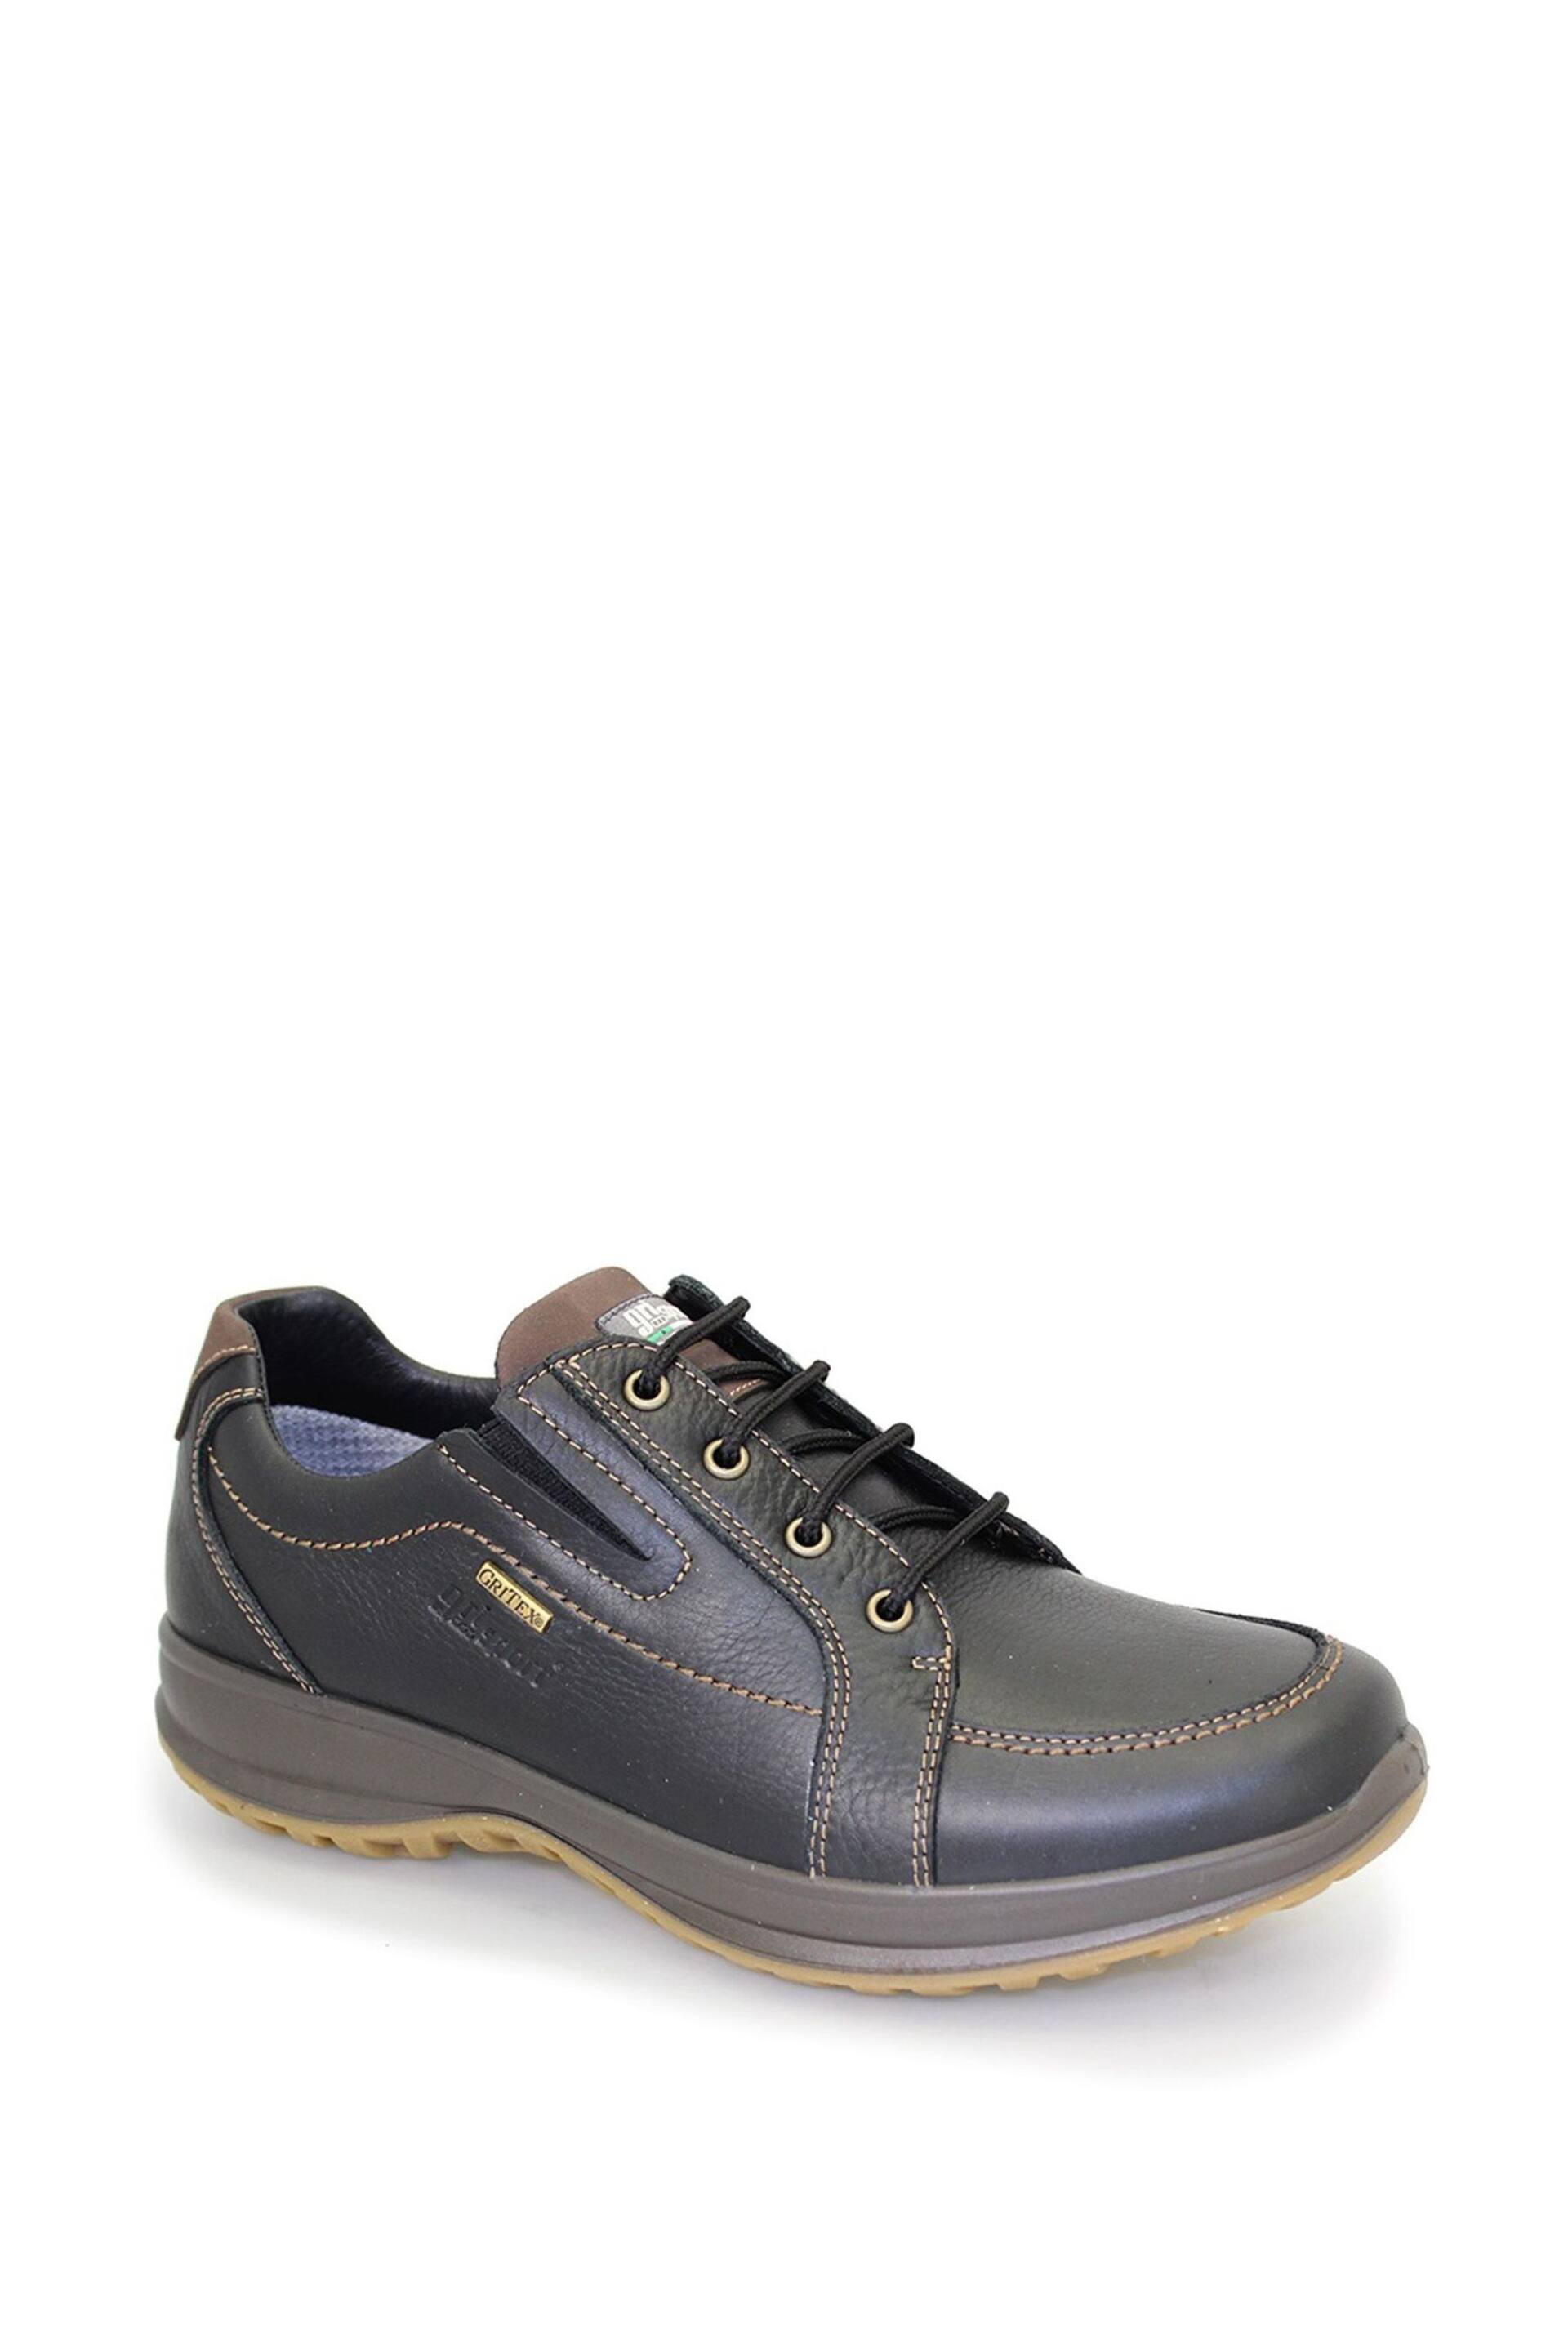 Grisport Ayr Black Comfort Shoes - Image 2 of 4